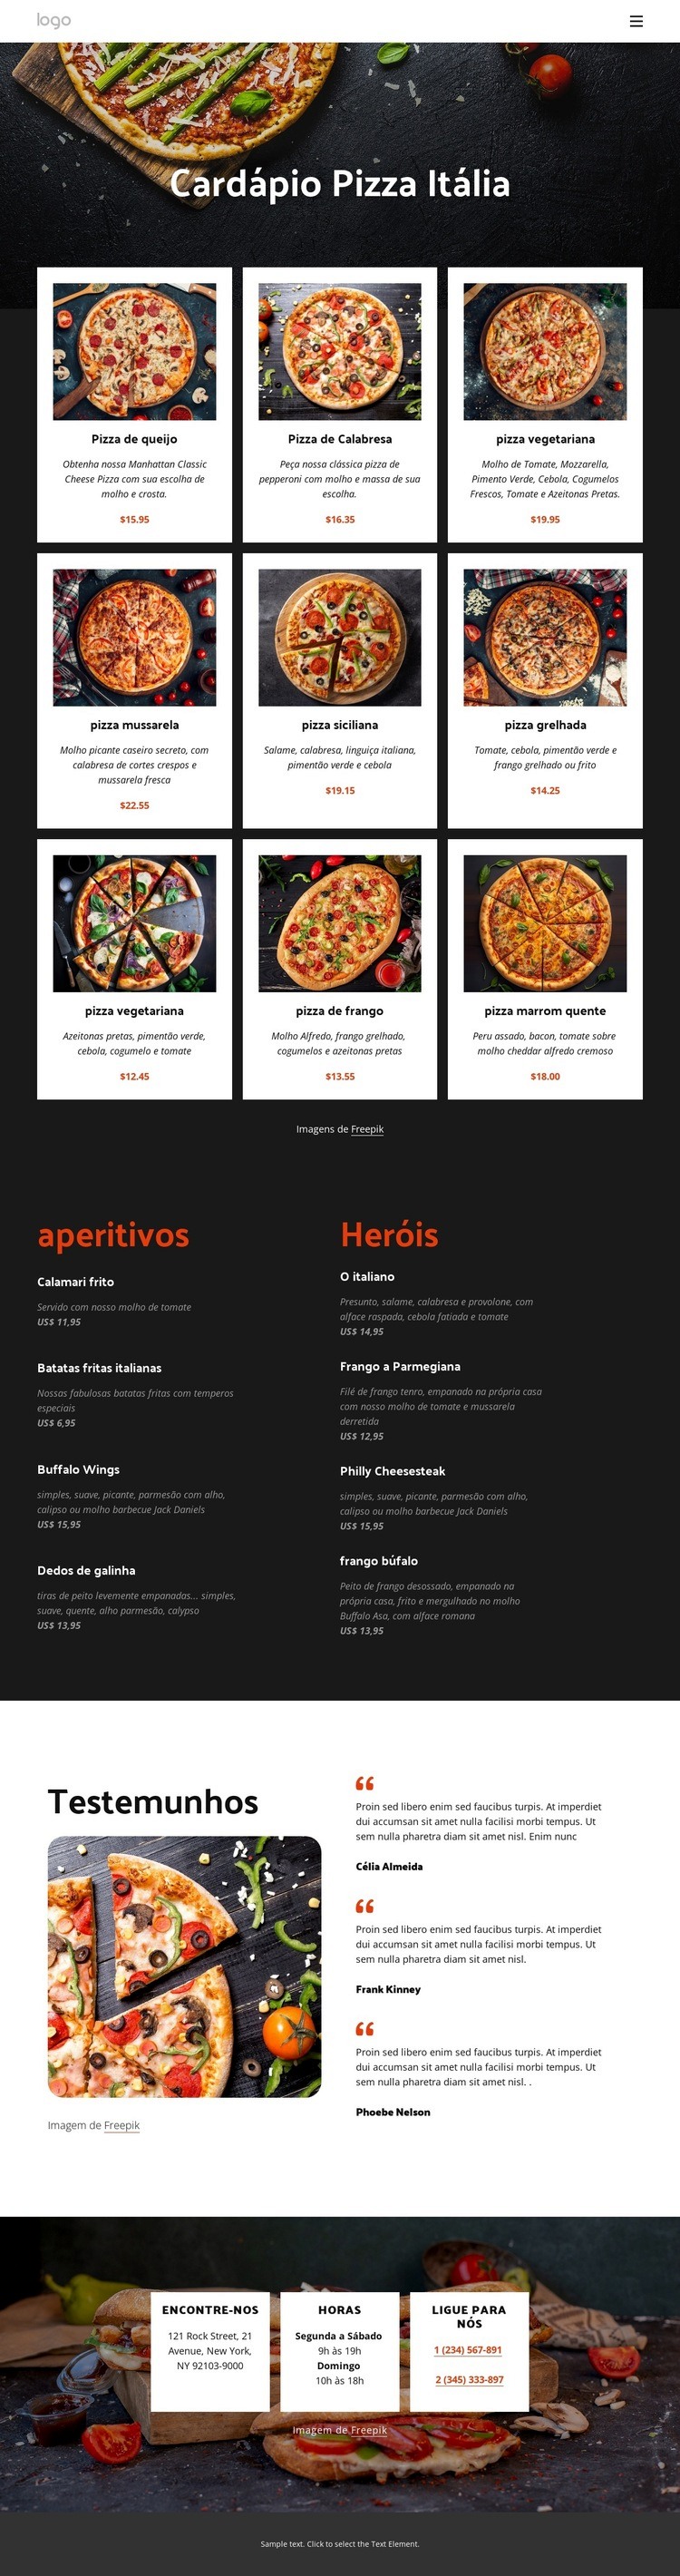 Nosso cardápio de pizzas Design do site